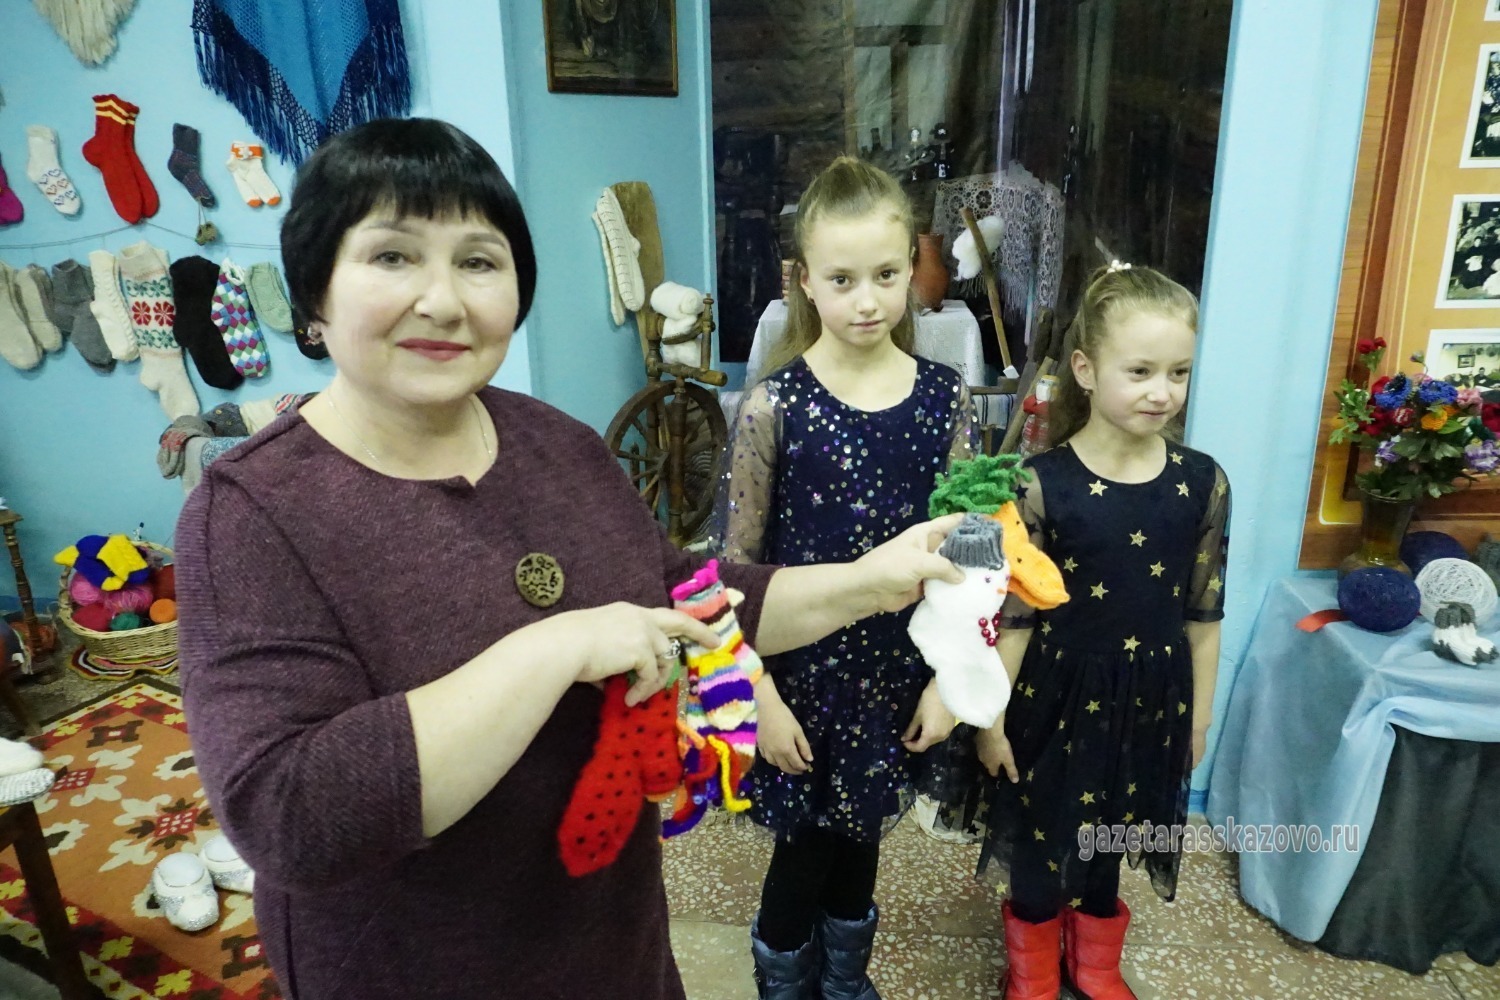 Вера Руднева получила вязанные носки от Софии и Анны Селивановых